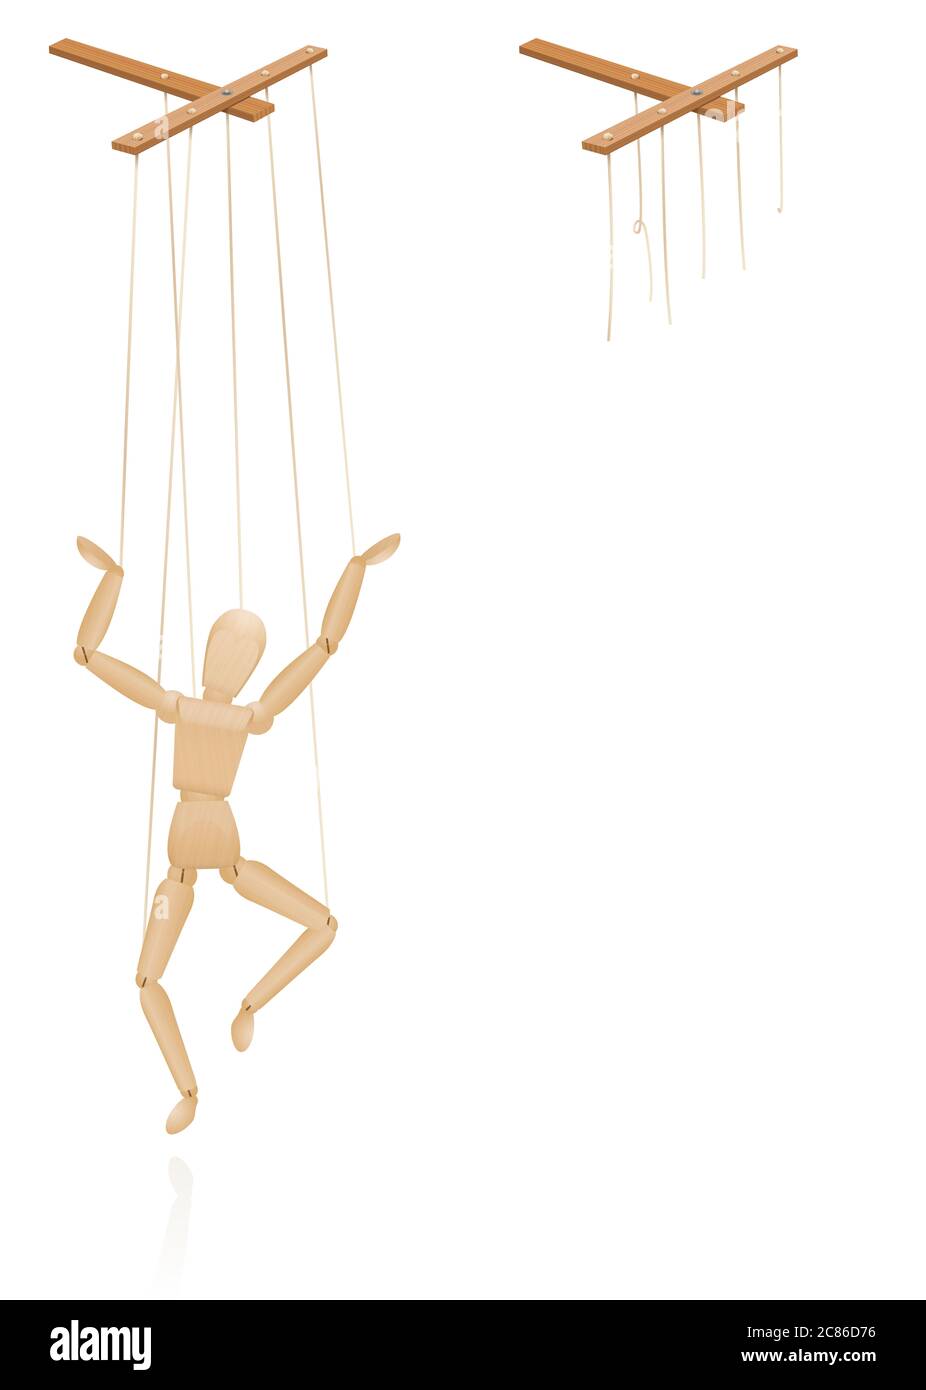 Marionnette sur cordes. Barre de contrôle de marionnette avec des cordes intactes et cassées. Des cordes déchirées comme symbole de liberté, d'indépendance, d'autonomie, de liberté. Banque D'Images